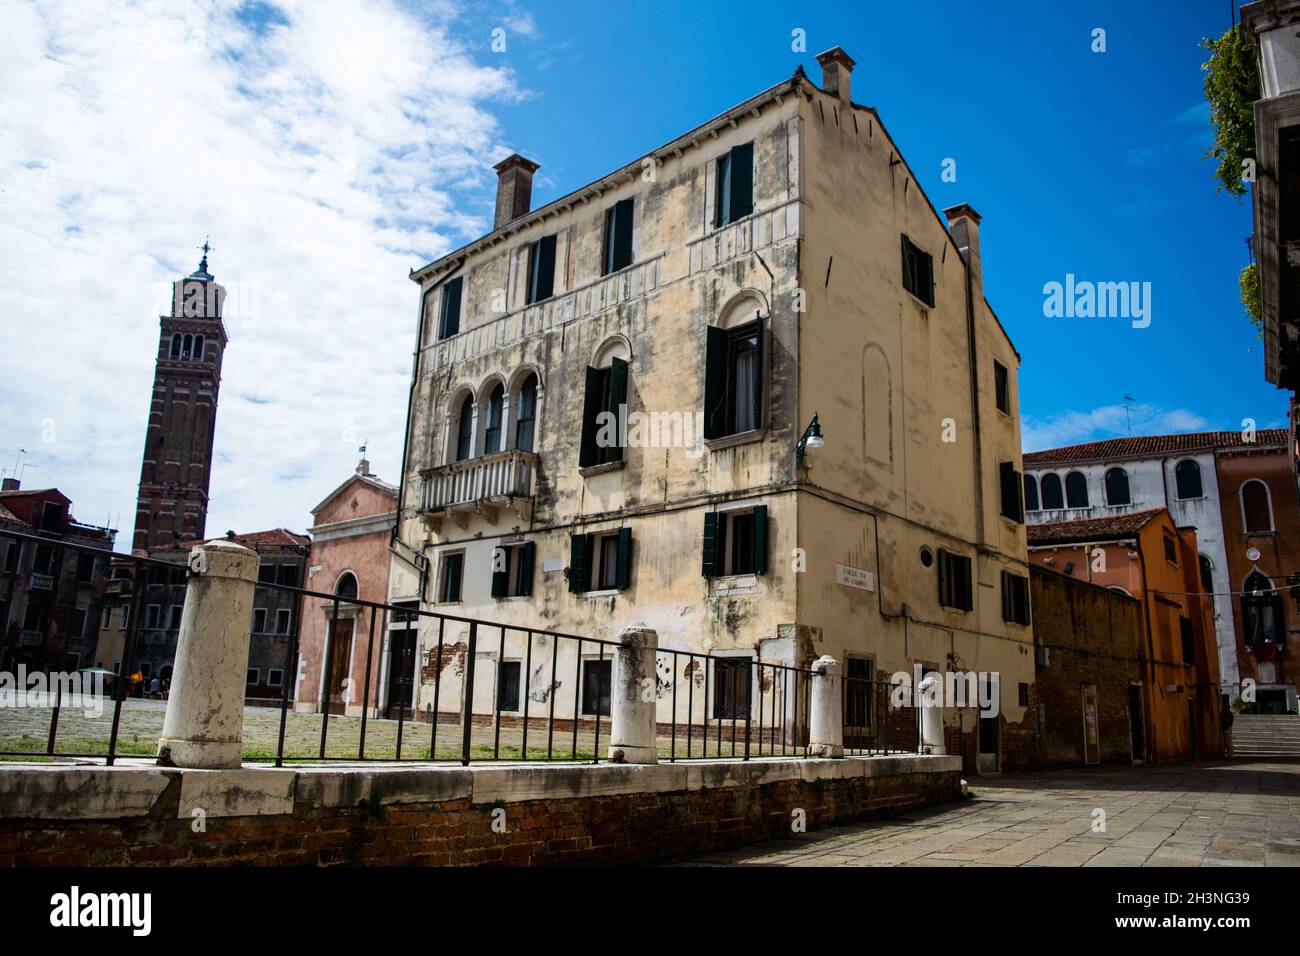 Ancien bâtiment de la place Campo San Anzolo et clocher de l'église Saint-Etienne à Venise, Italie Banque D'Images